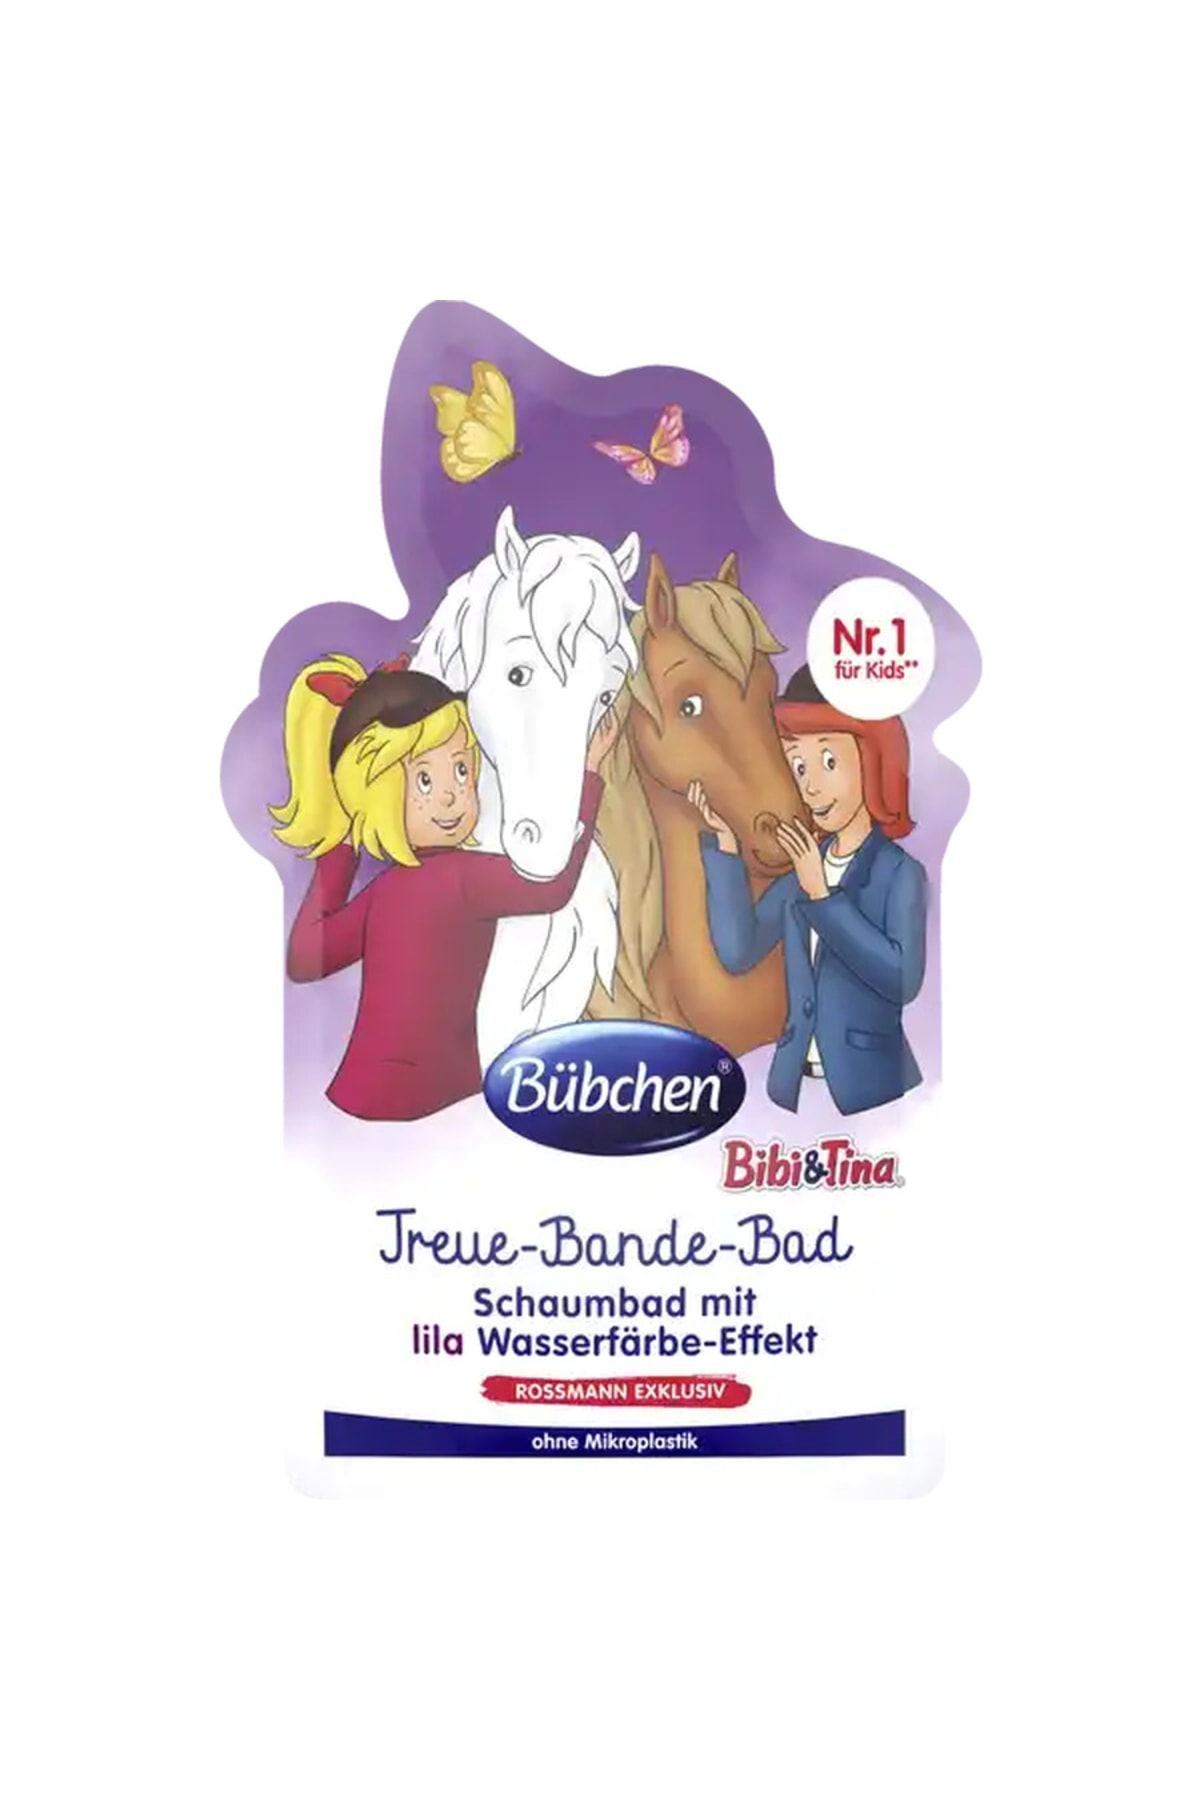 Bübchen Alman Kalitesi-çocuklar Için Mor Renkli Banyo Köpüğü 40 Ml- Bibi&tina